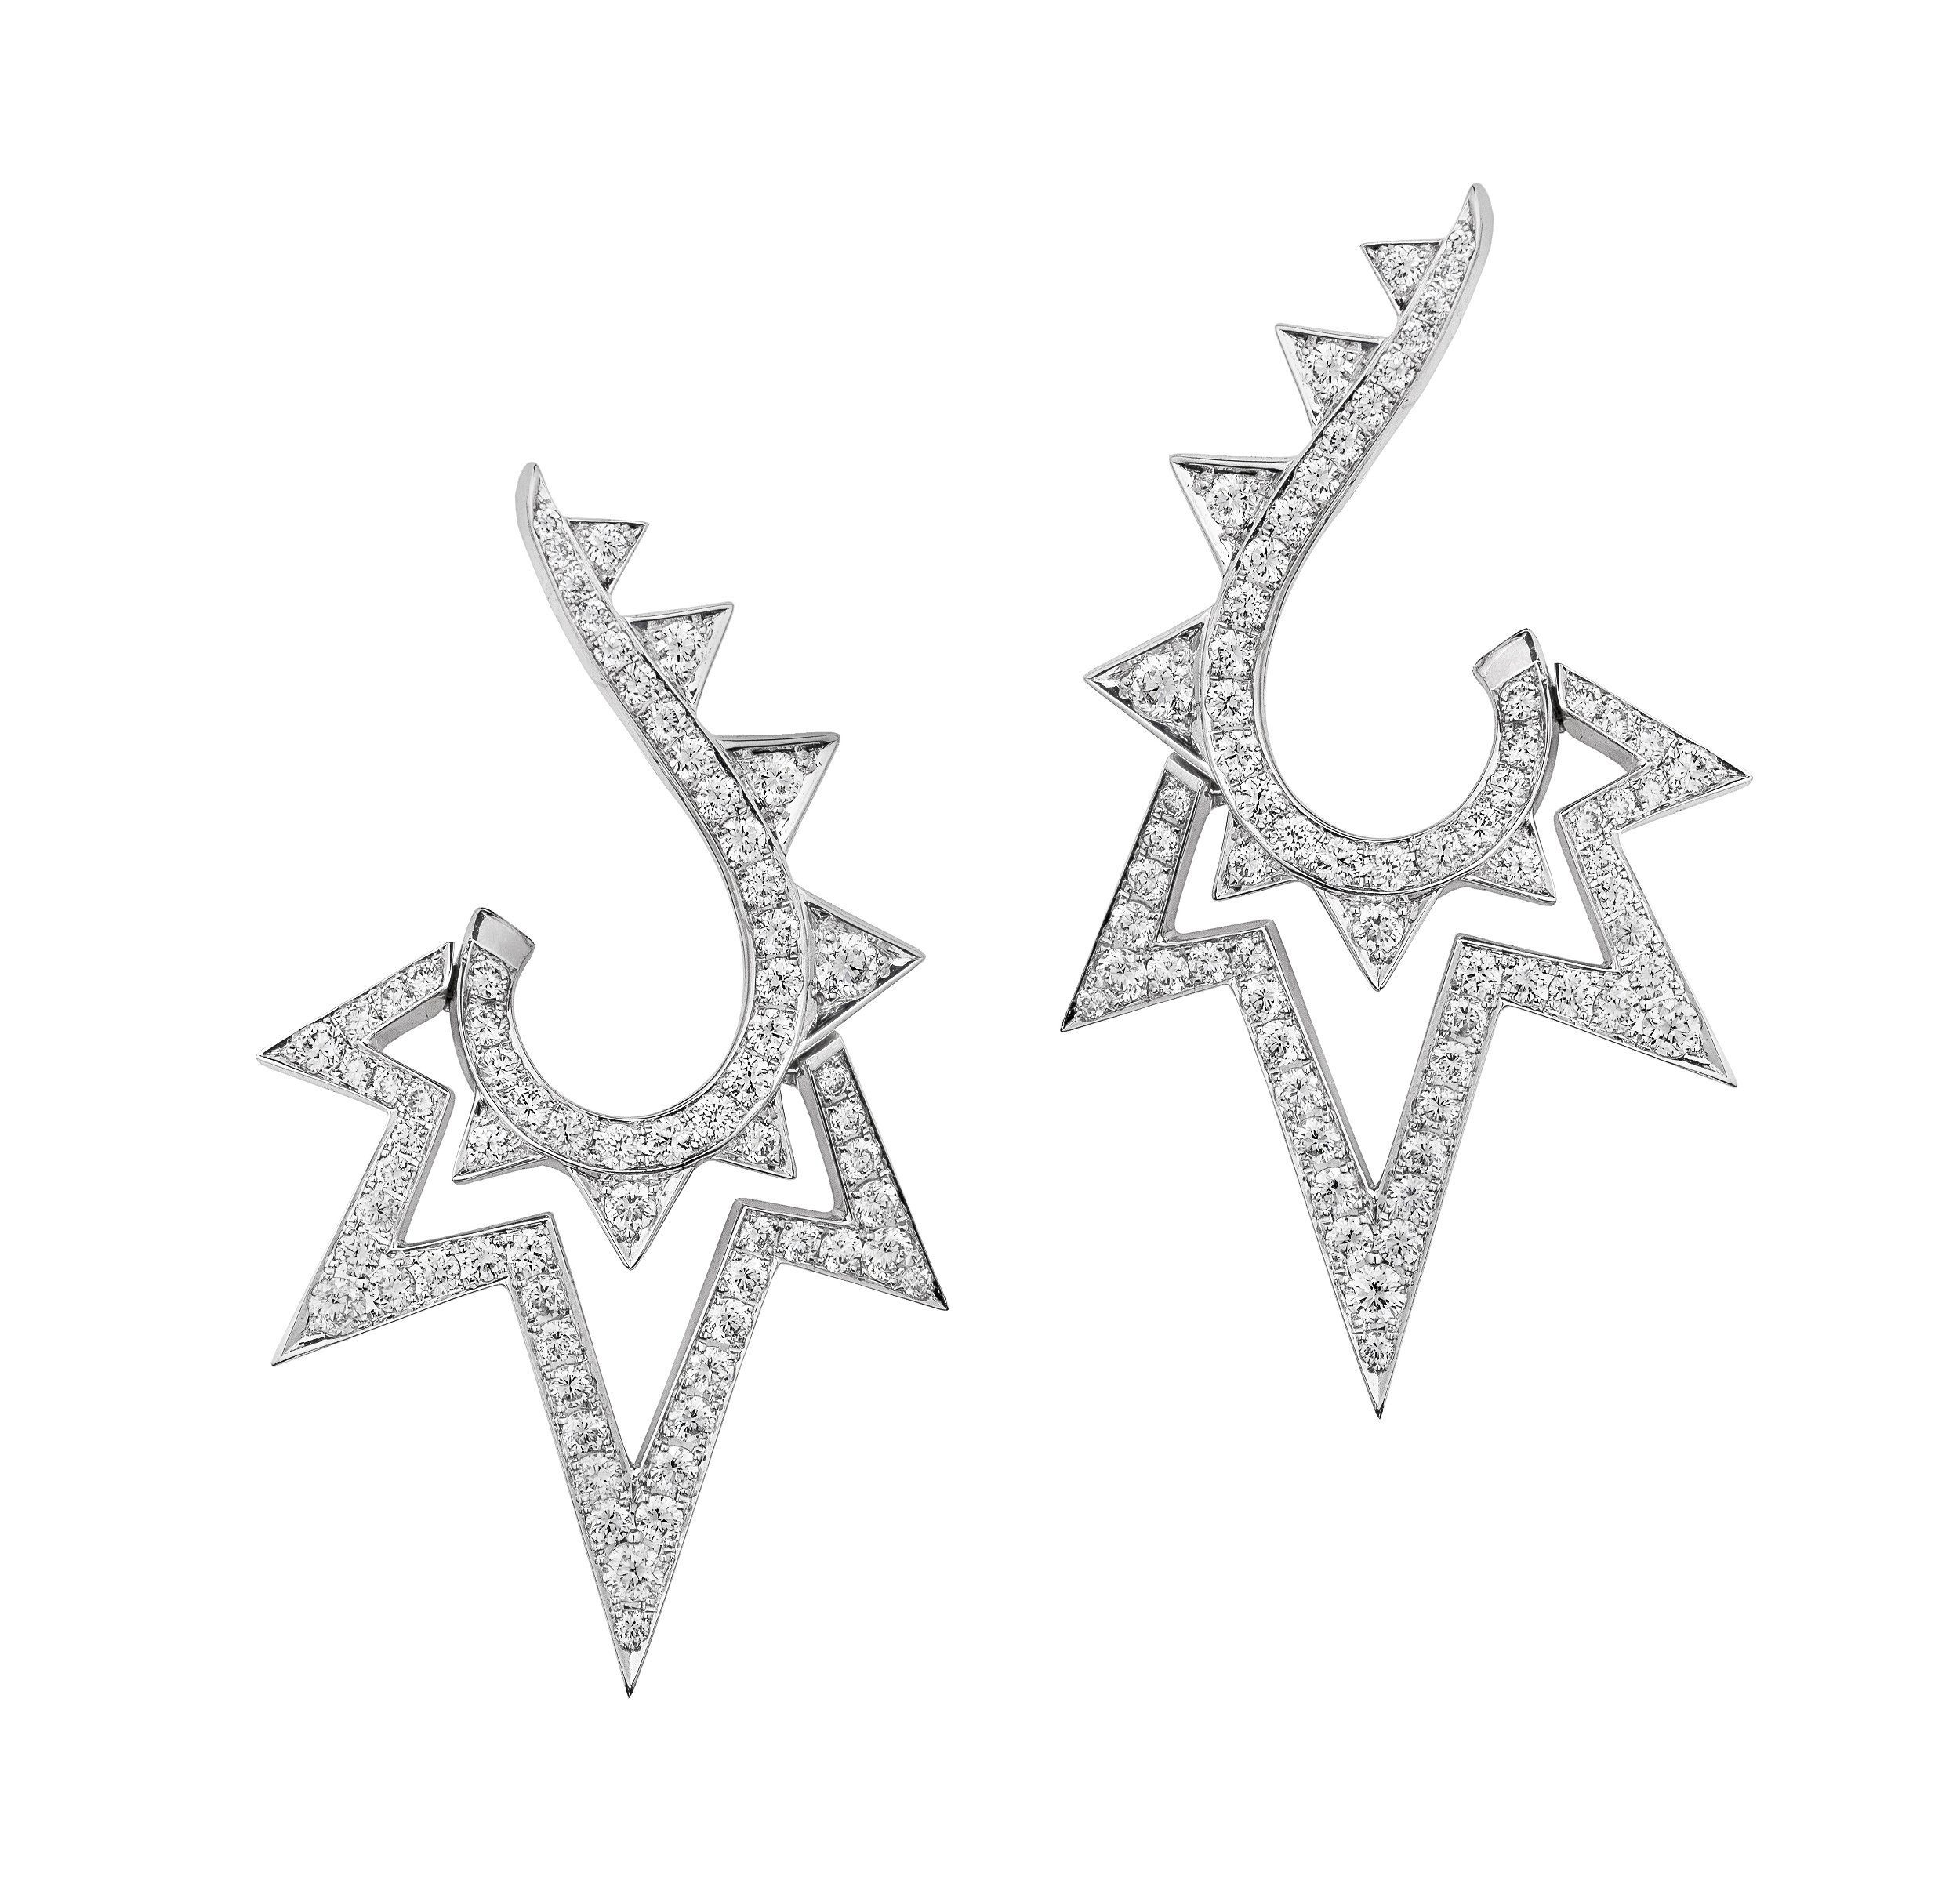 Lady Stardust Lightning Bolt Hoop Earrings with White Diamonds in 18kt White Gold